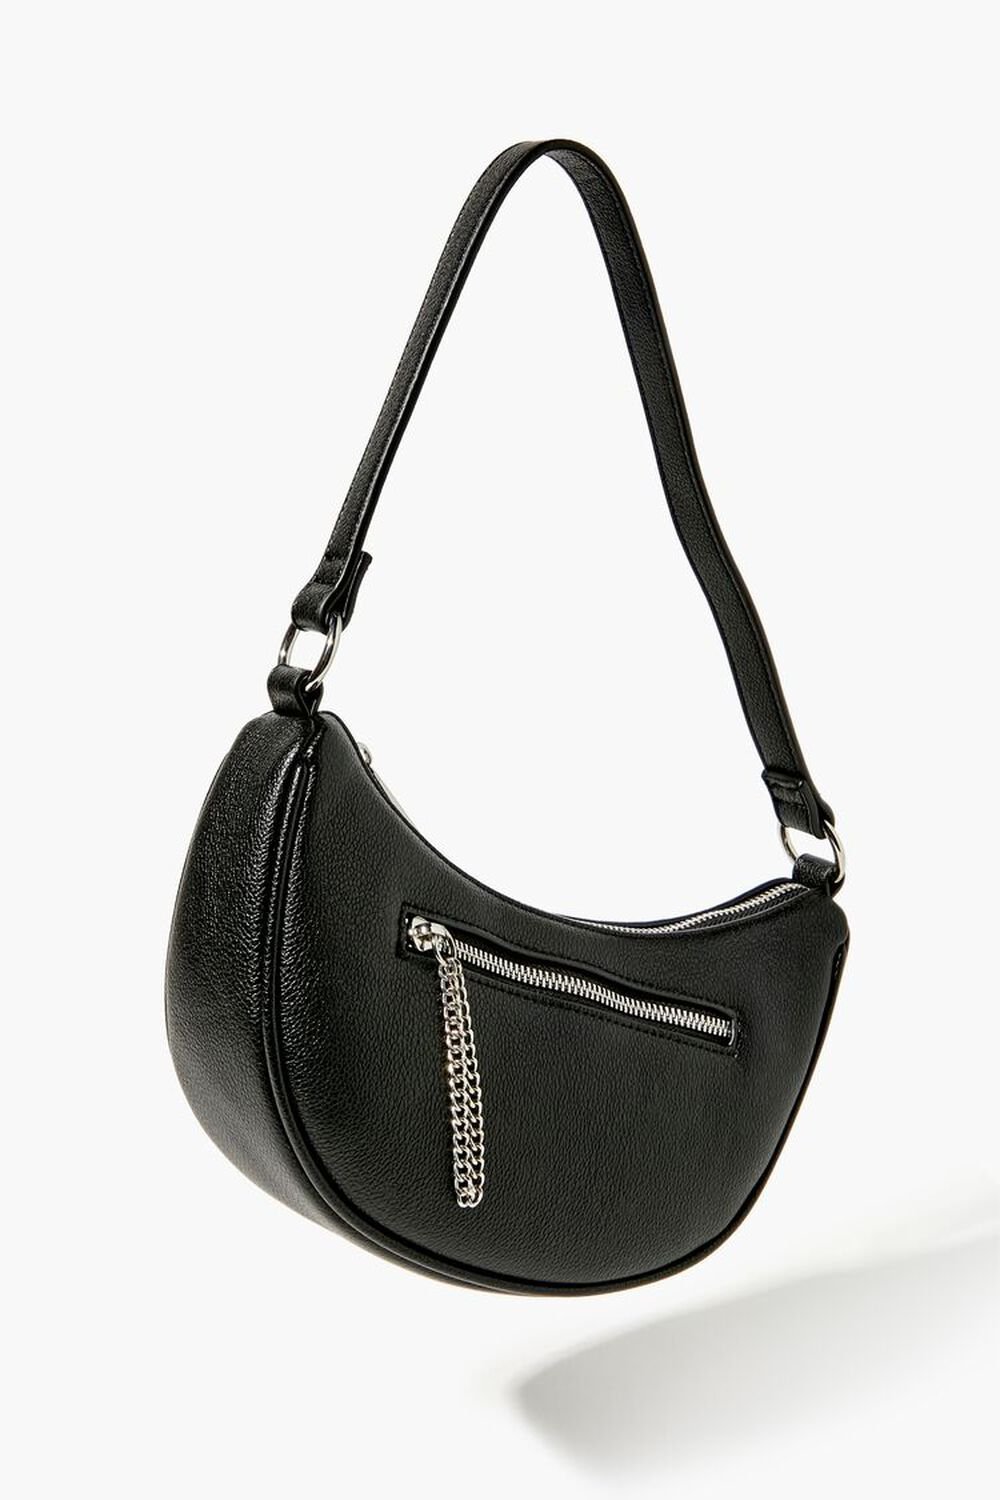 BLACK Faux Leather Baguette Shoulder Bag, image 1